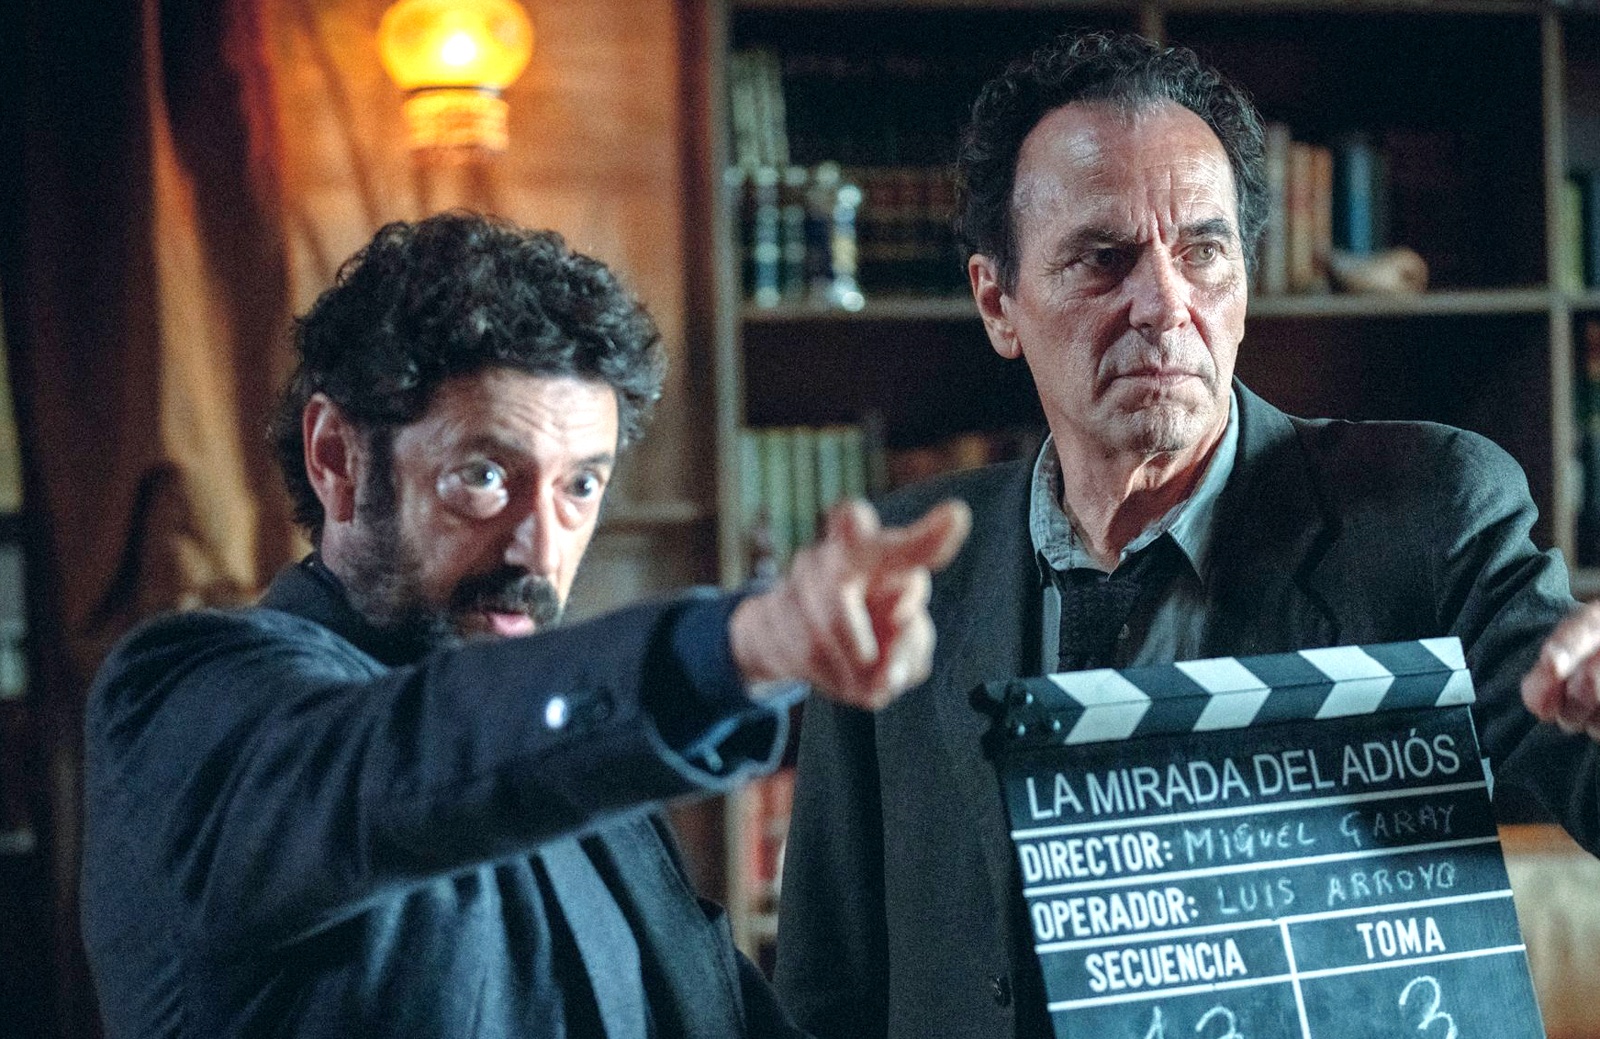 Manolo Solo y José Coronado protagonizan la película Cerrar los ojos, estreno en Movistar Plus+ el jueves 8 de febrero